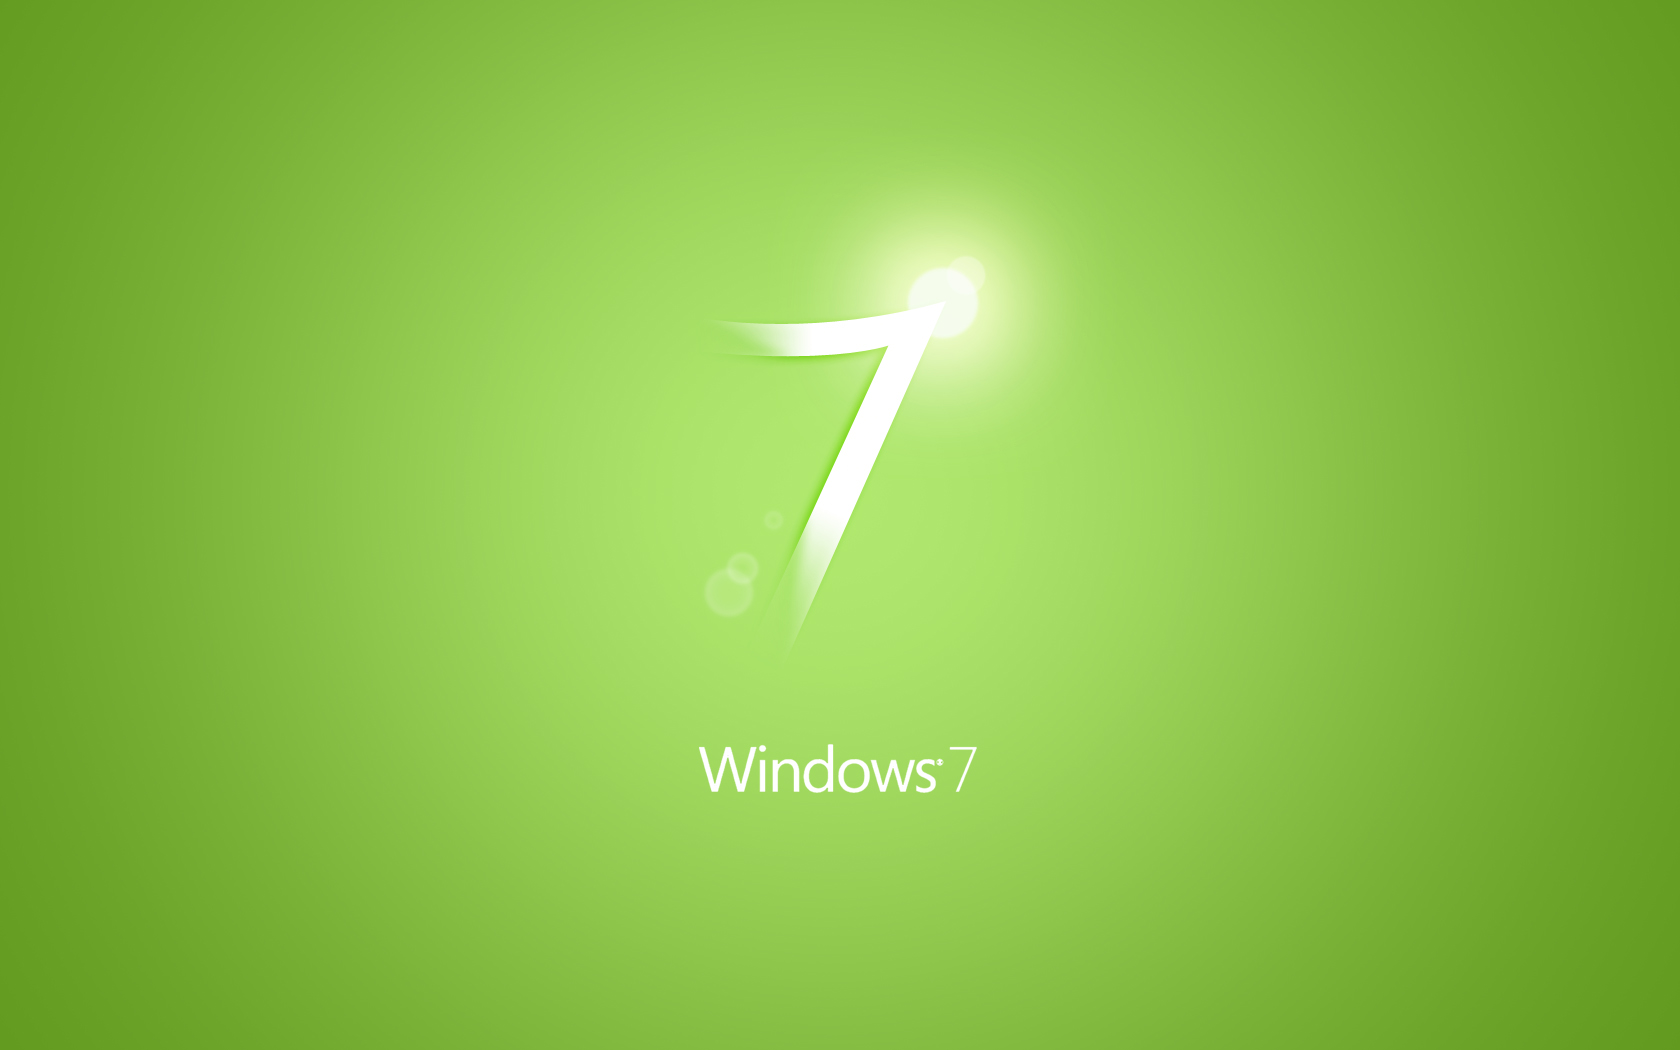 windows7_green_1920.jpg